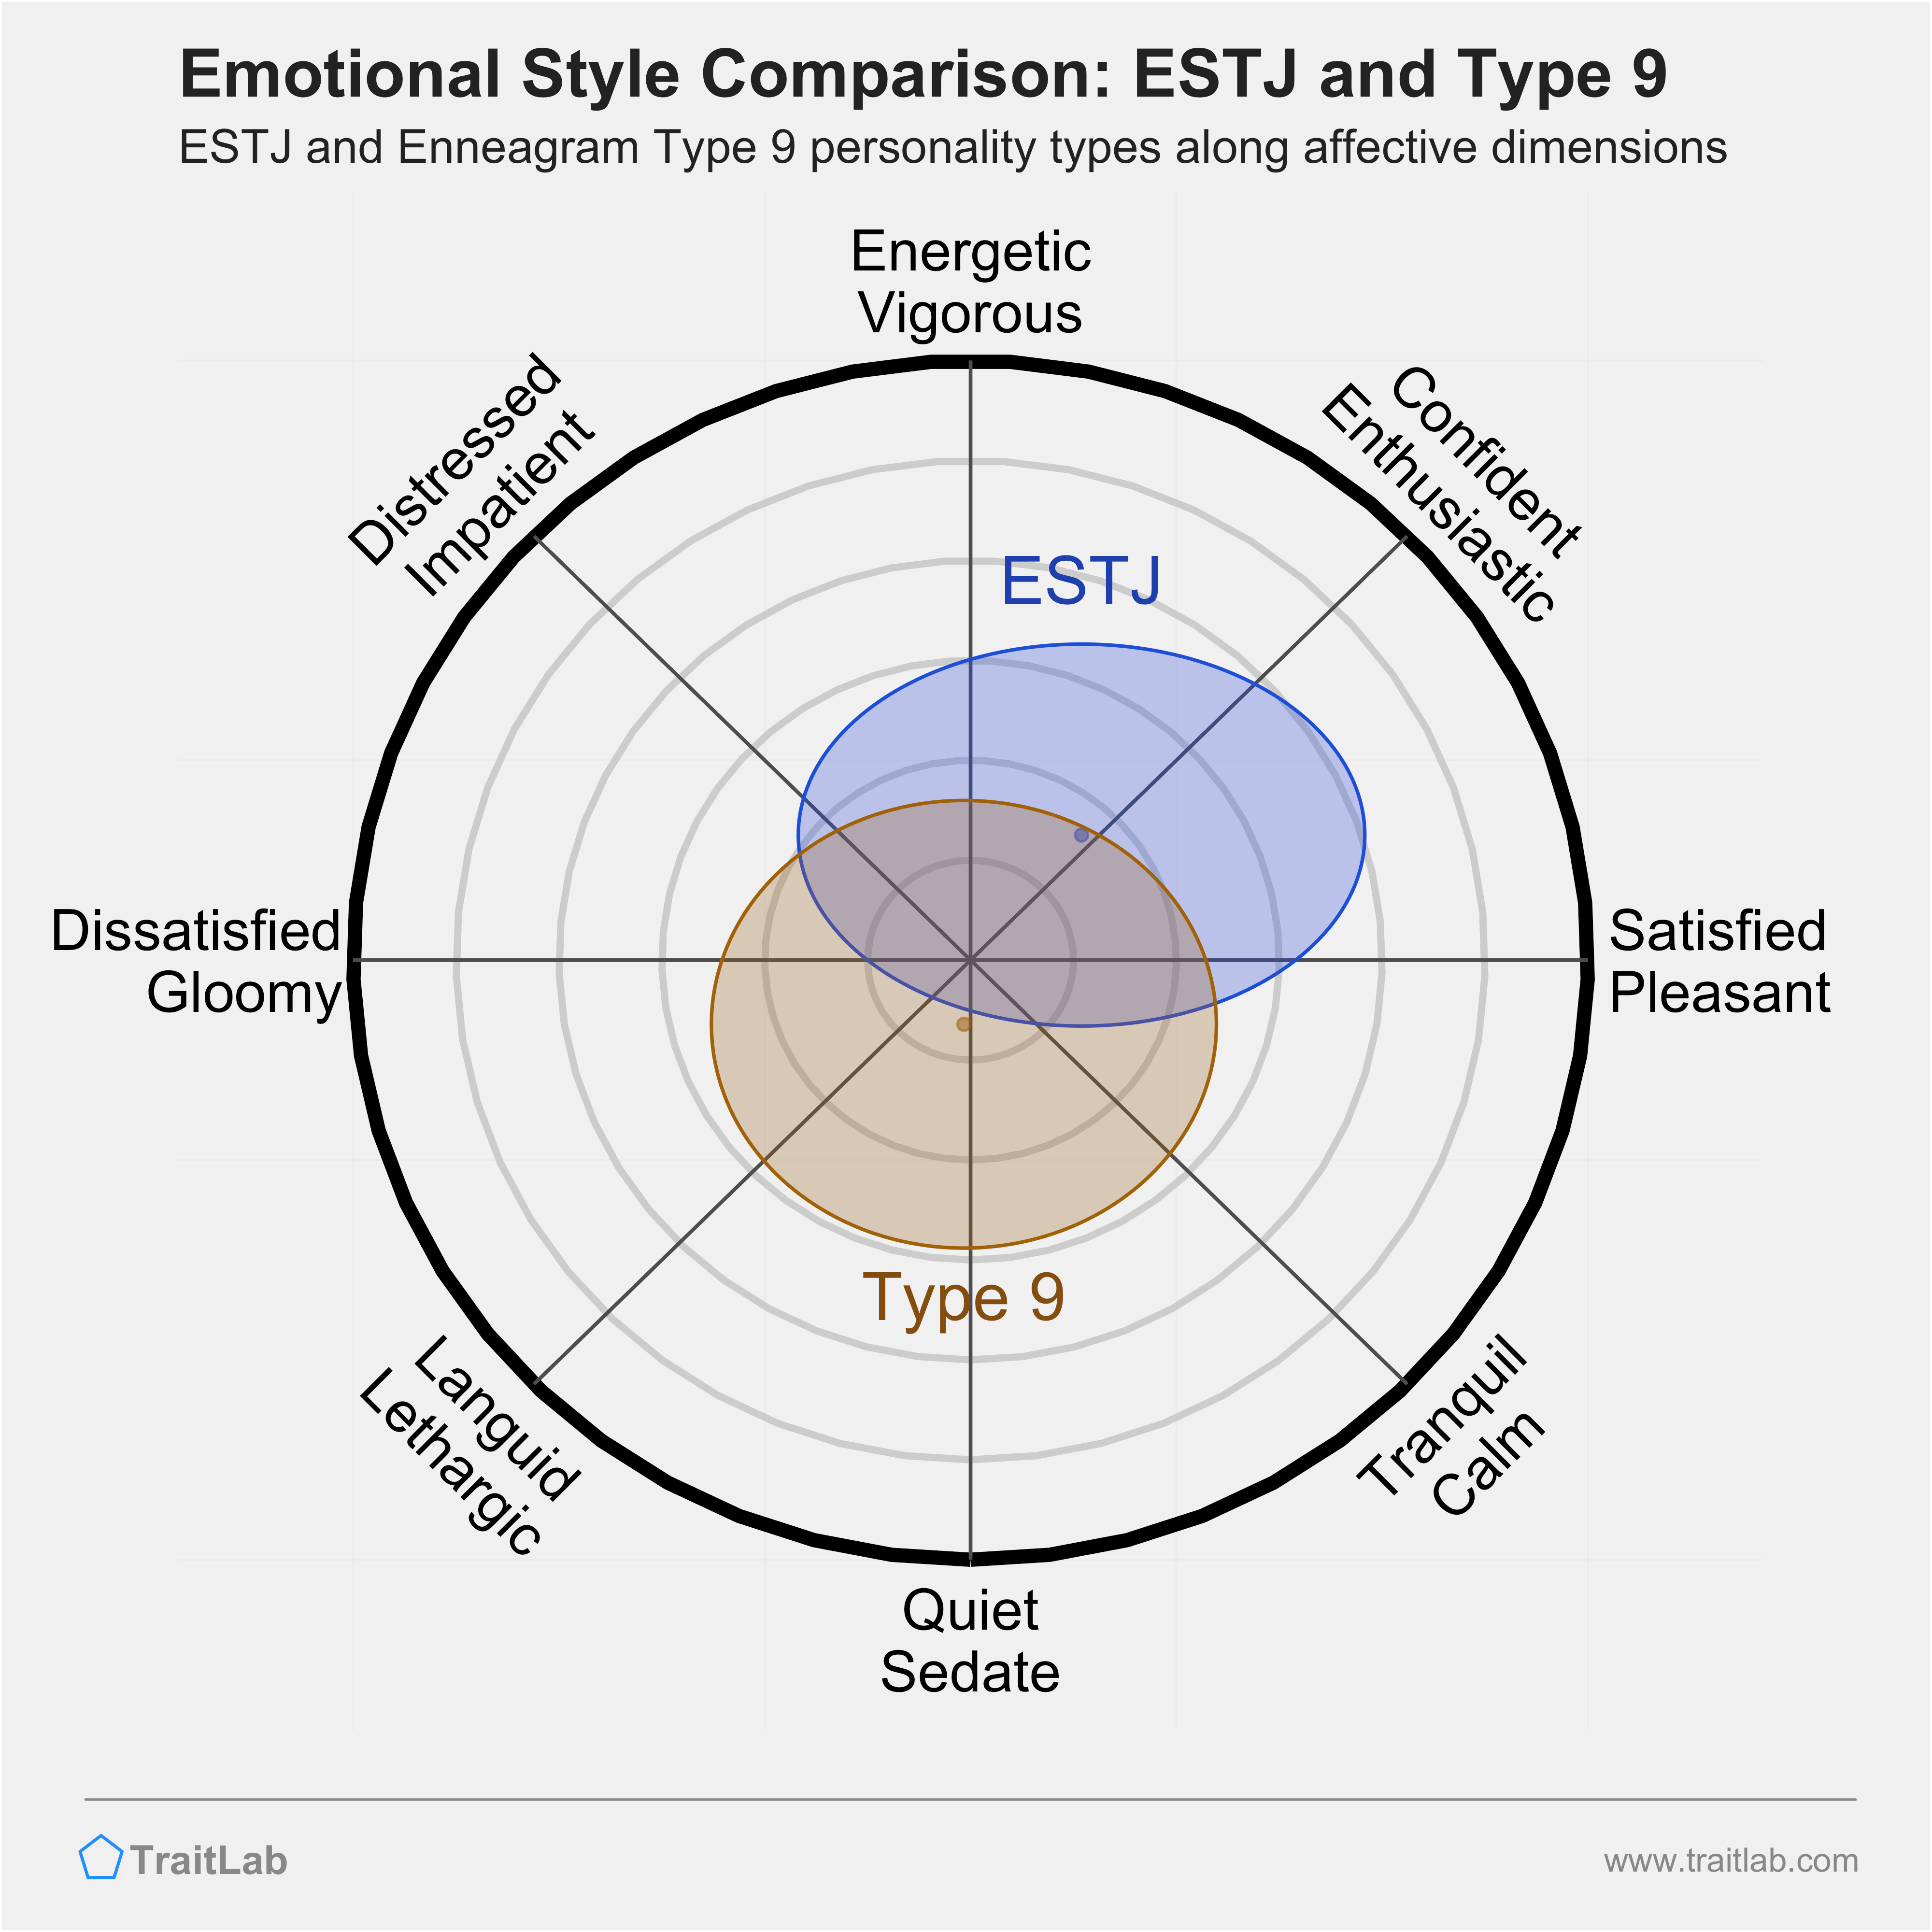 ESTJ and Type 9 comparison across emotional (affective) dimensions